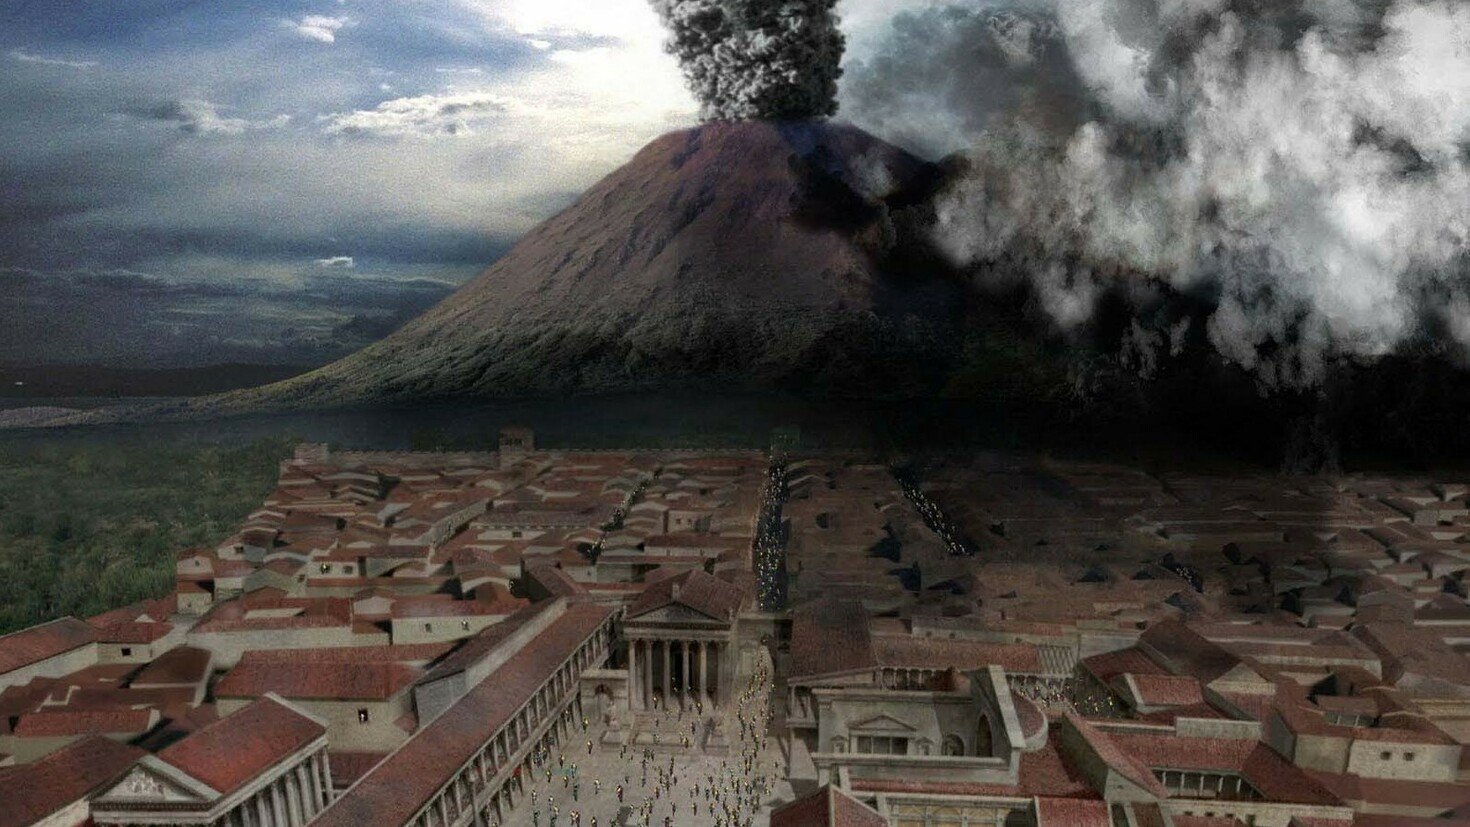 Извержение вулкана уничтожило город. Вулкан Везувий извержение Помпеи. Извержение вулкана Везувия в 79 году. Извержение Везувия Помпеи. Извержение вулкана Везувий 79 г.